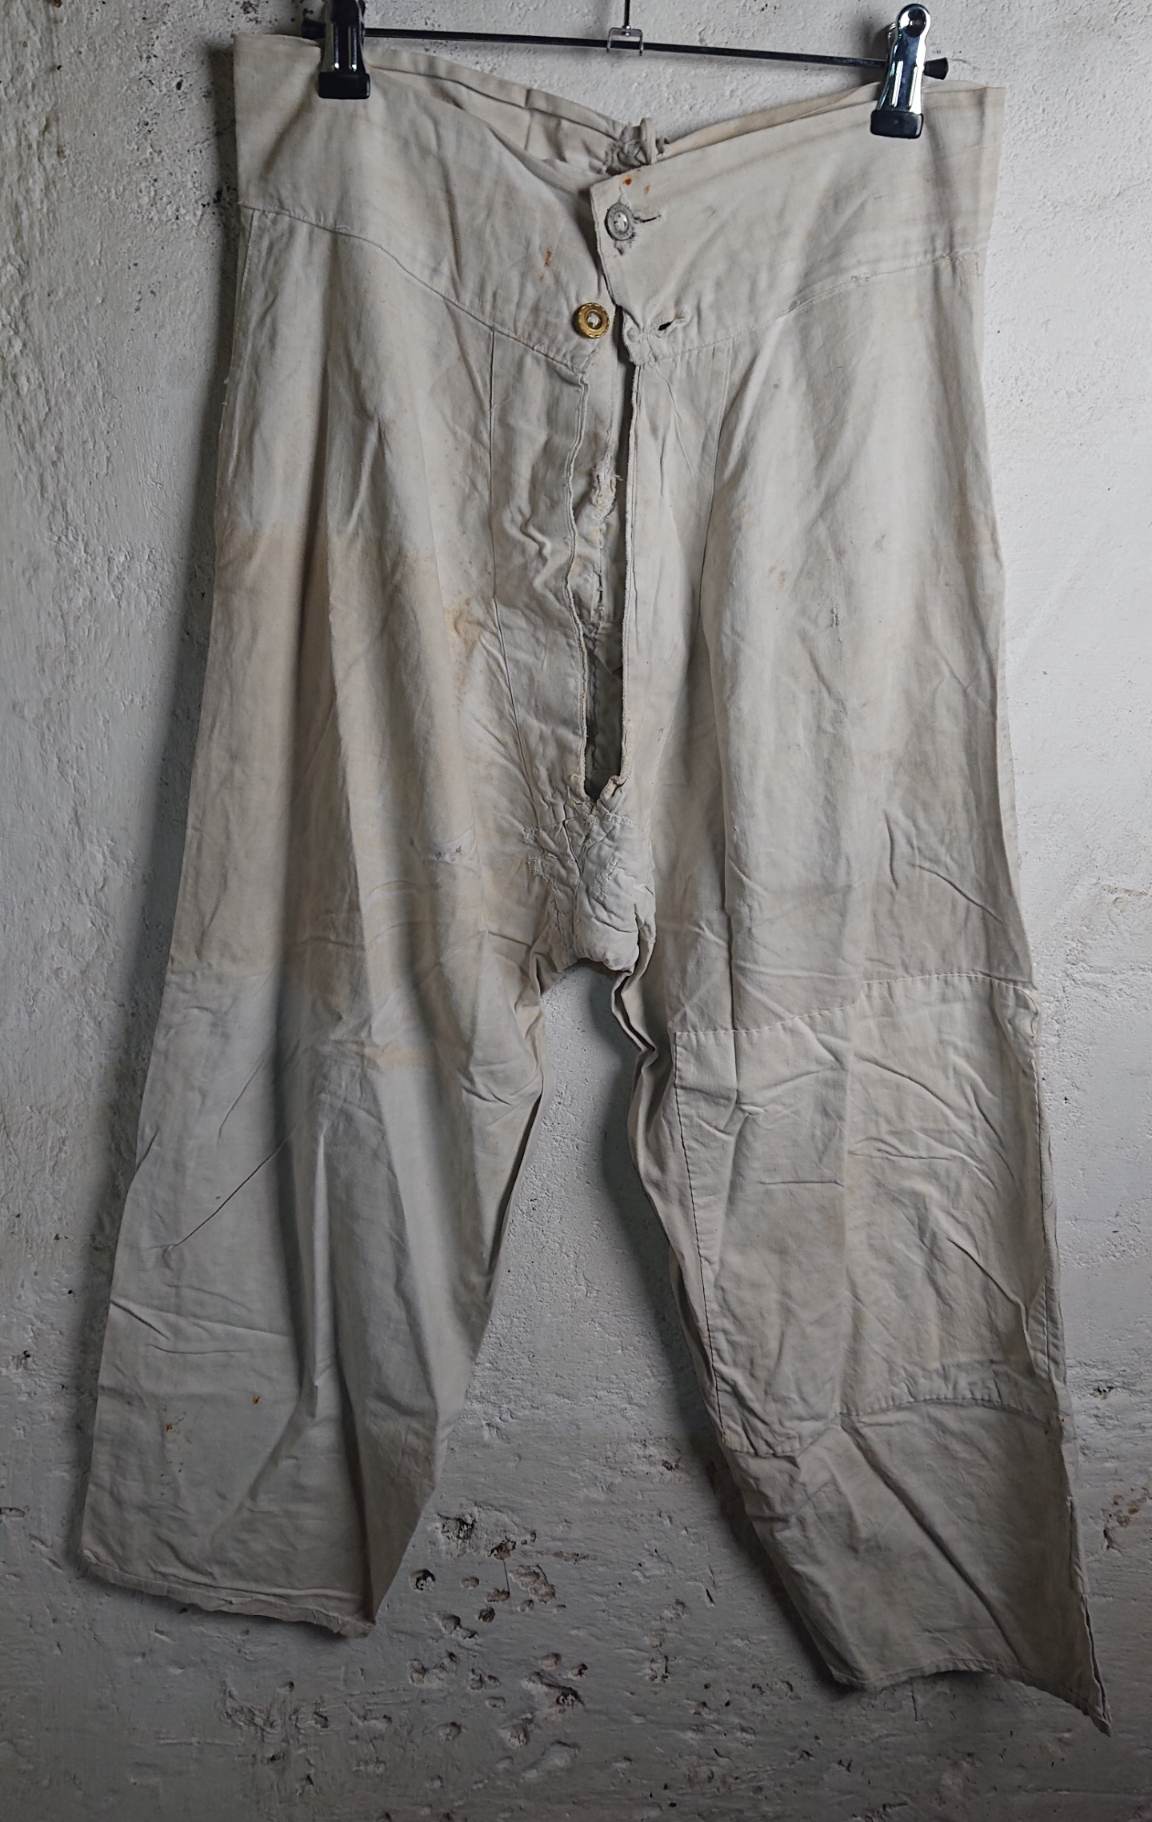 militaria : Caleçon long homme 1900 / Men's long underpants 1900